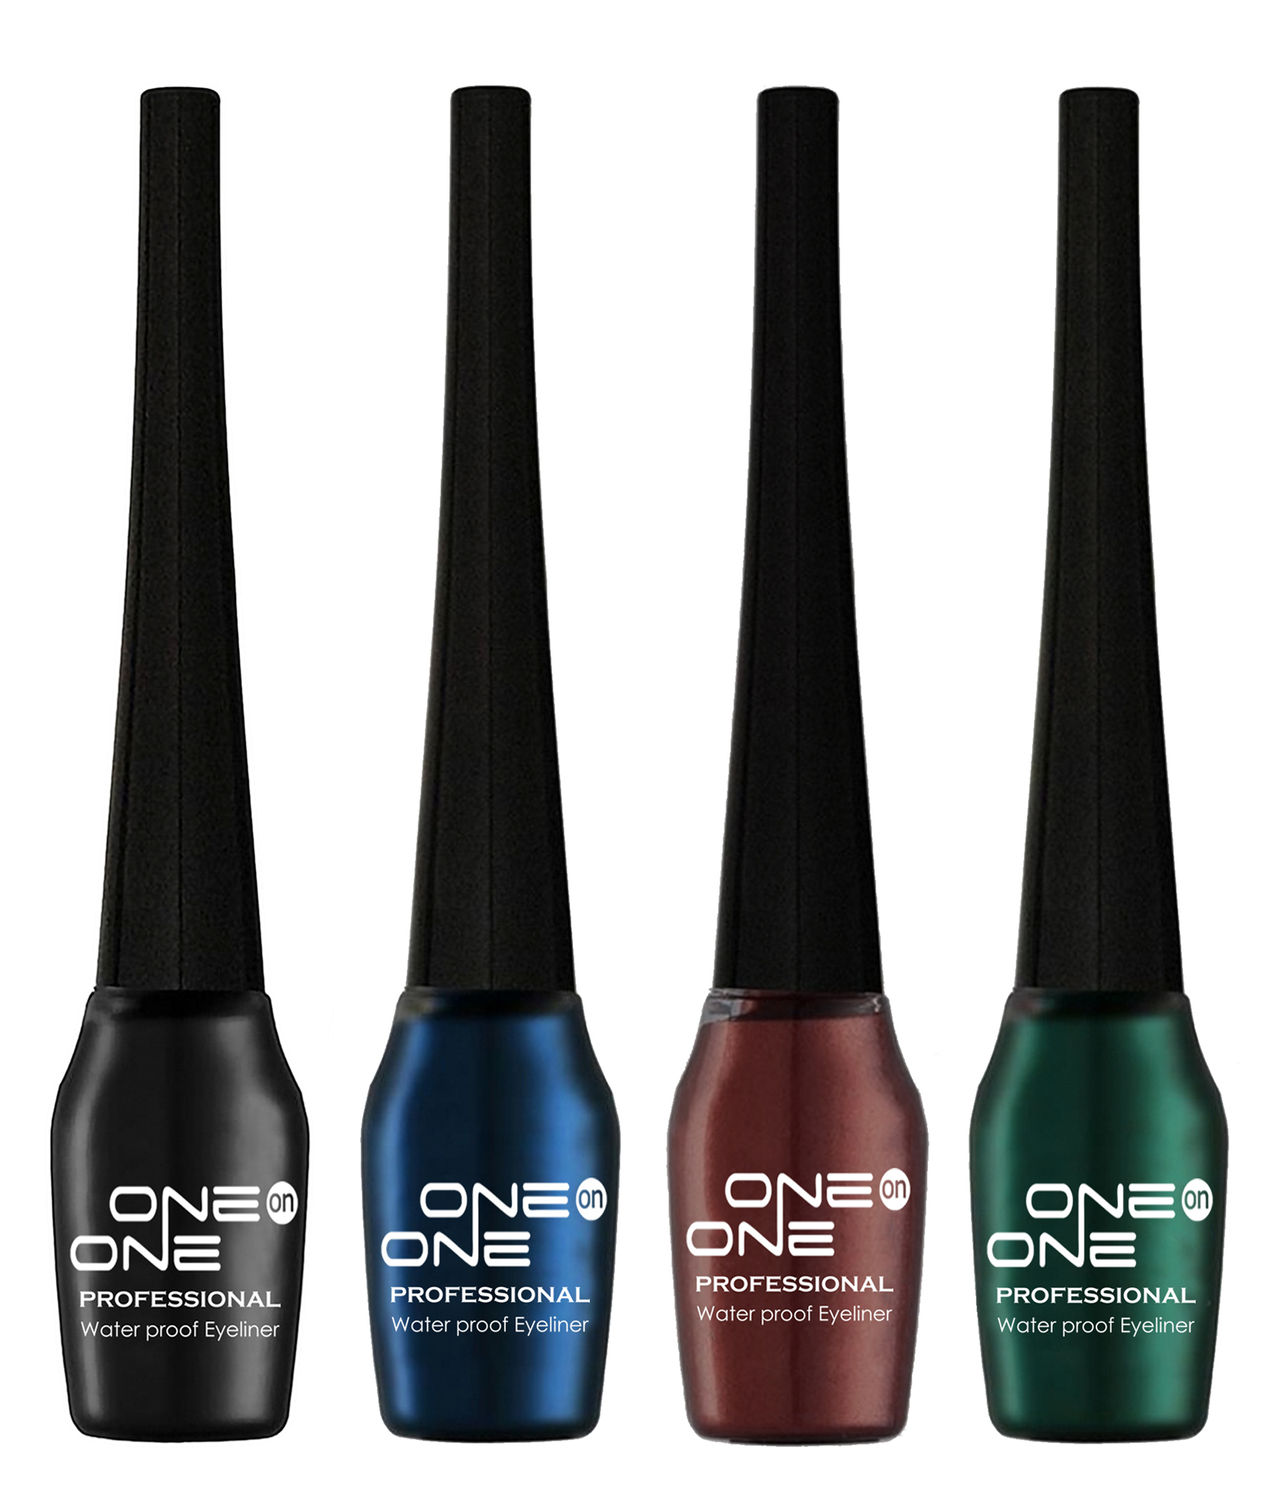 Buy ONE on ONE Waterproof Eyeliner, Set of 4 (Black, Blue, Brown, Green) - Purplle